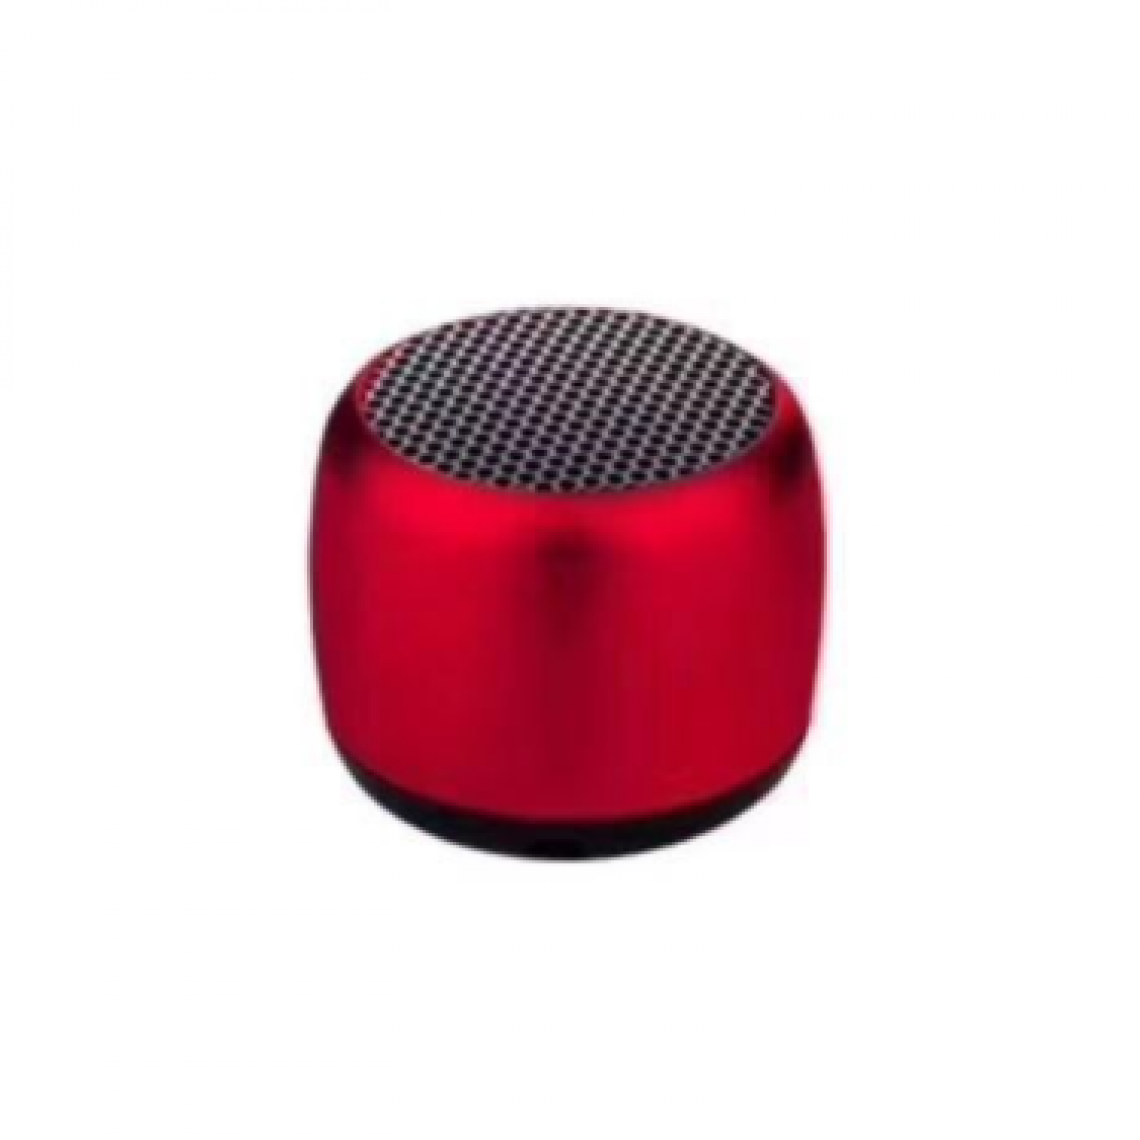 Chrono - Mini haut-parleur portable Haut-parleur sans fil Bluetooth, avec microphone, coque en métal robuste, lumière LED, 5 heures de lecture, peut être associé à un son surround stéréo(Rouge) - Enceinte PC